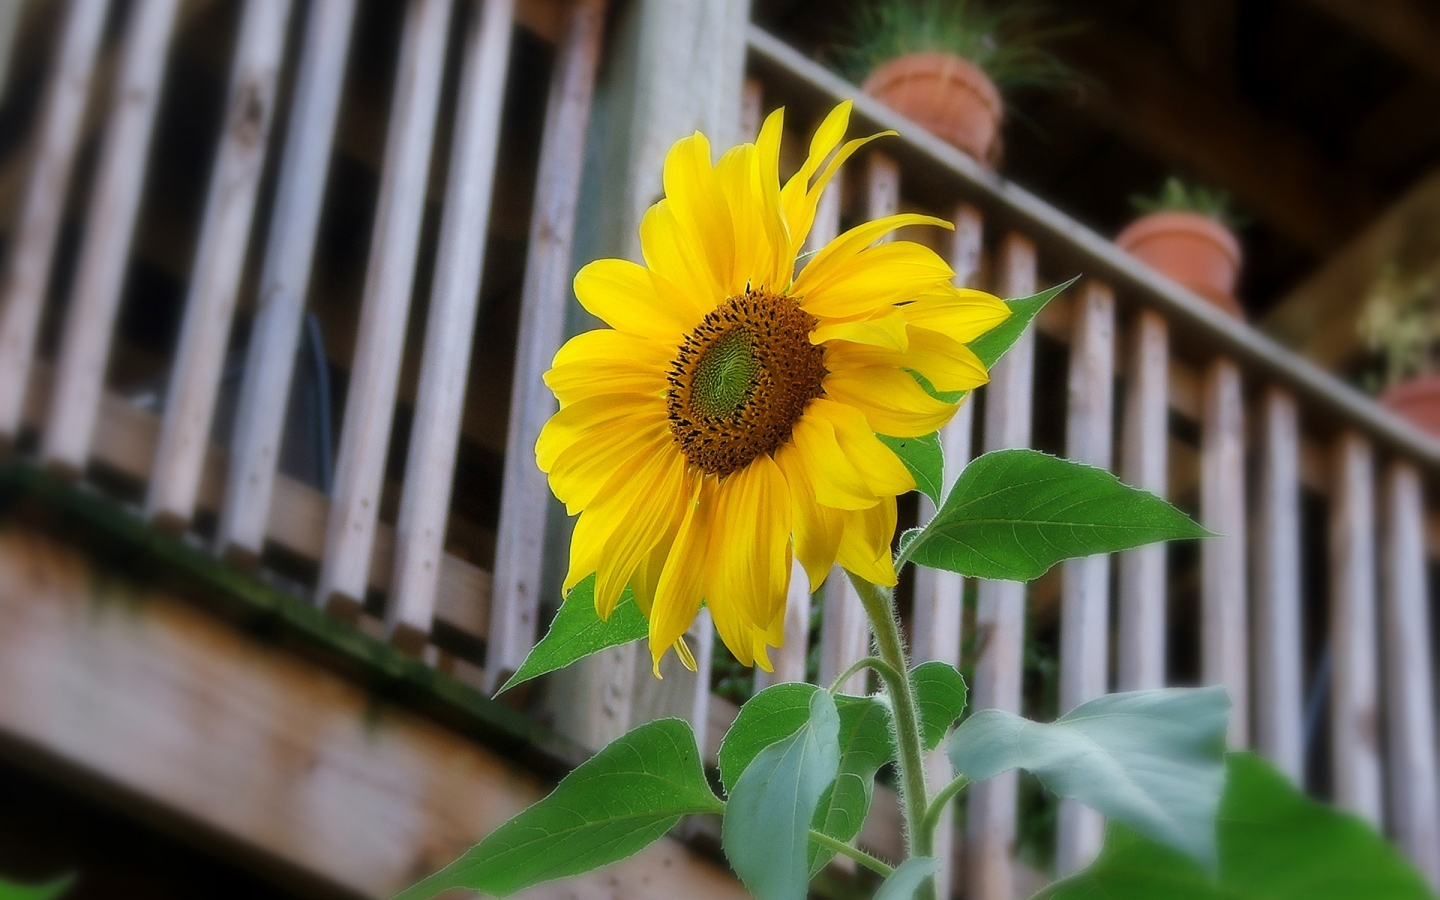 Sunflower for 1440 x 900 widescreen resolution